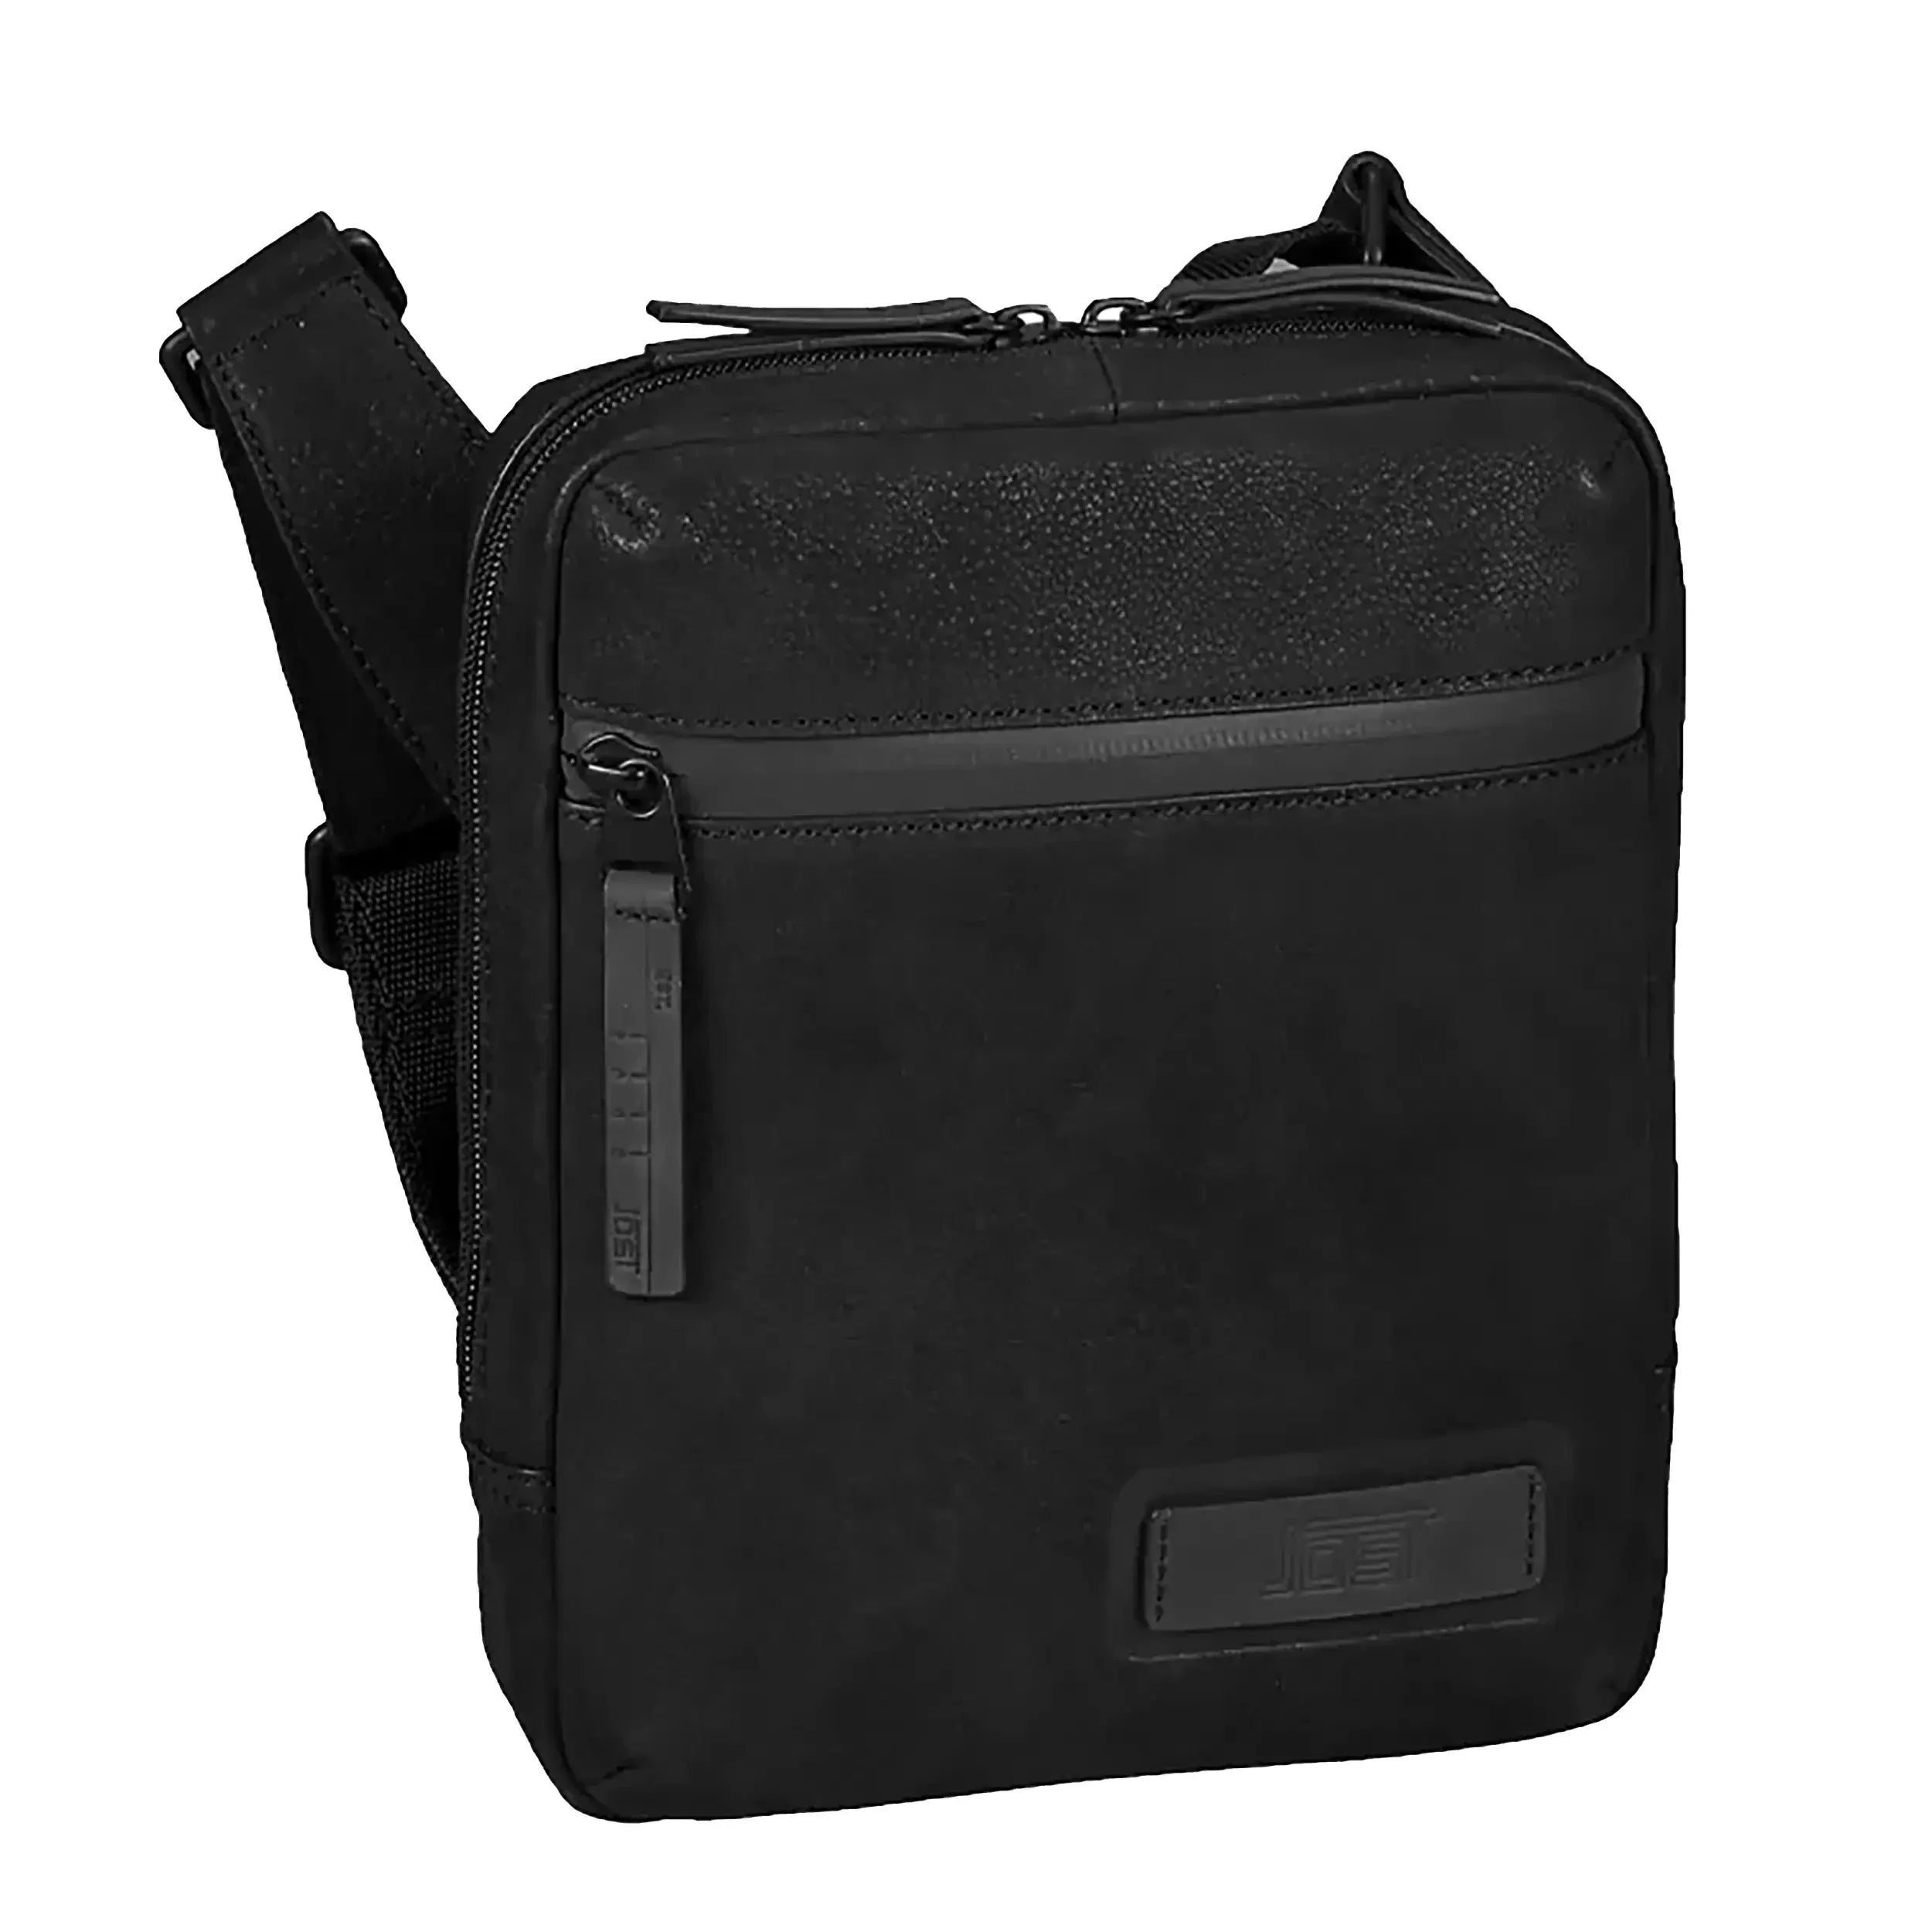 Jost Voxholm shoulder bag XS 21 cm - Black